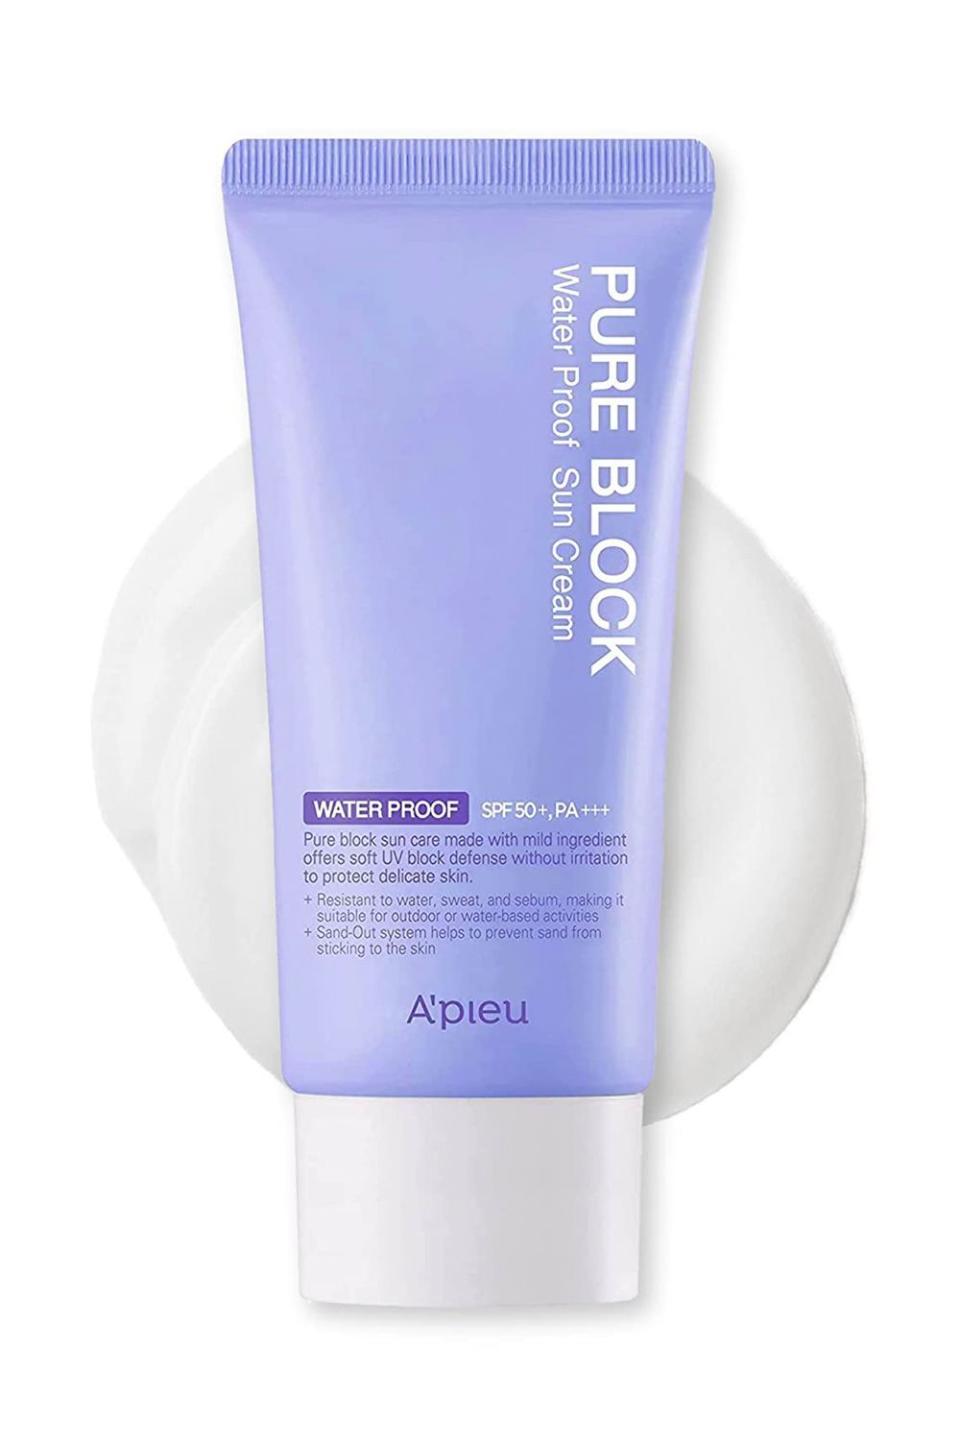 1) A'pieu Pure Block Waterproof Sunscreen Cream SPF50+/PA+++ 50ml | Sweat-proof Korean Sunscreen for Outdoor Activities